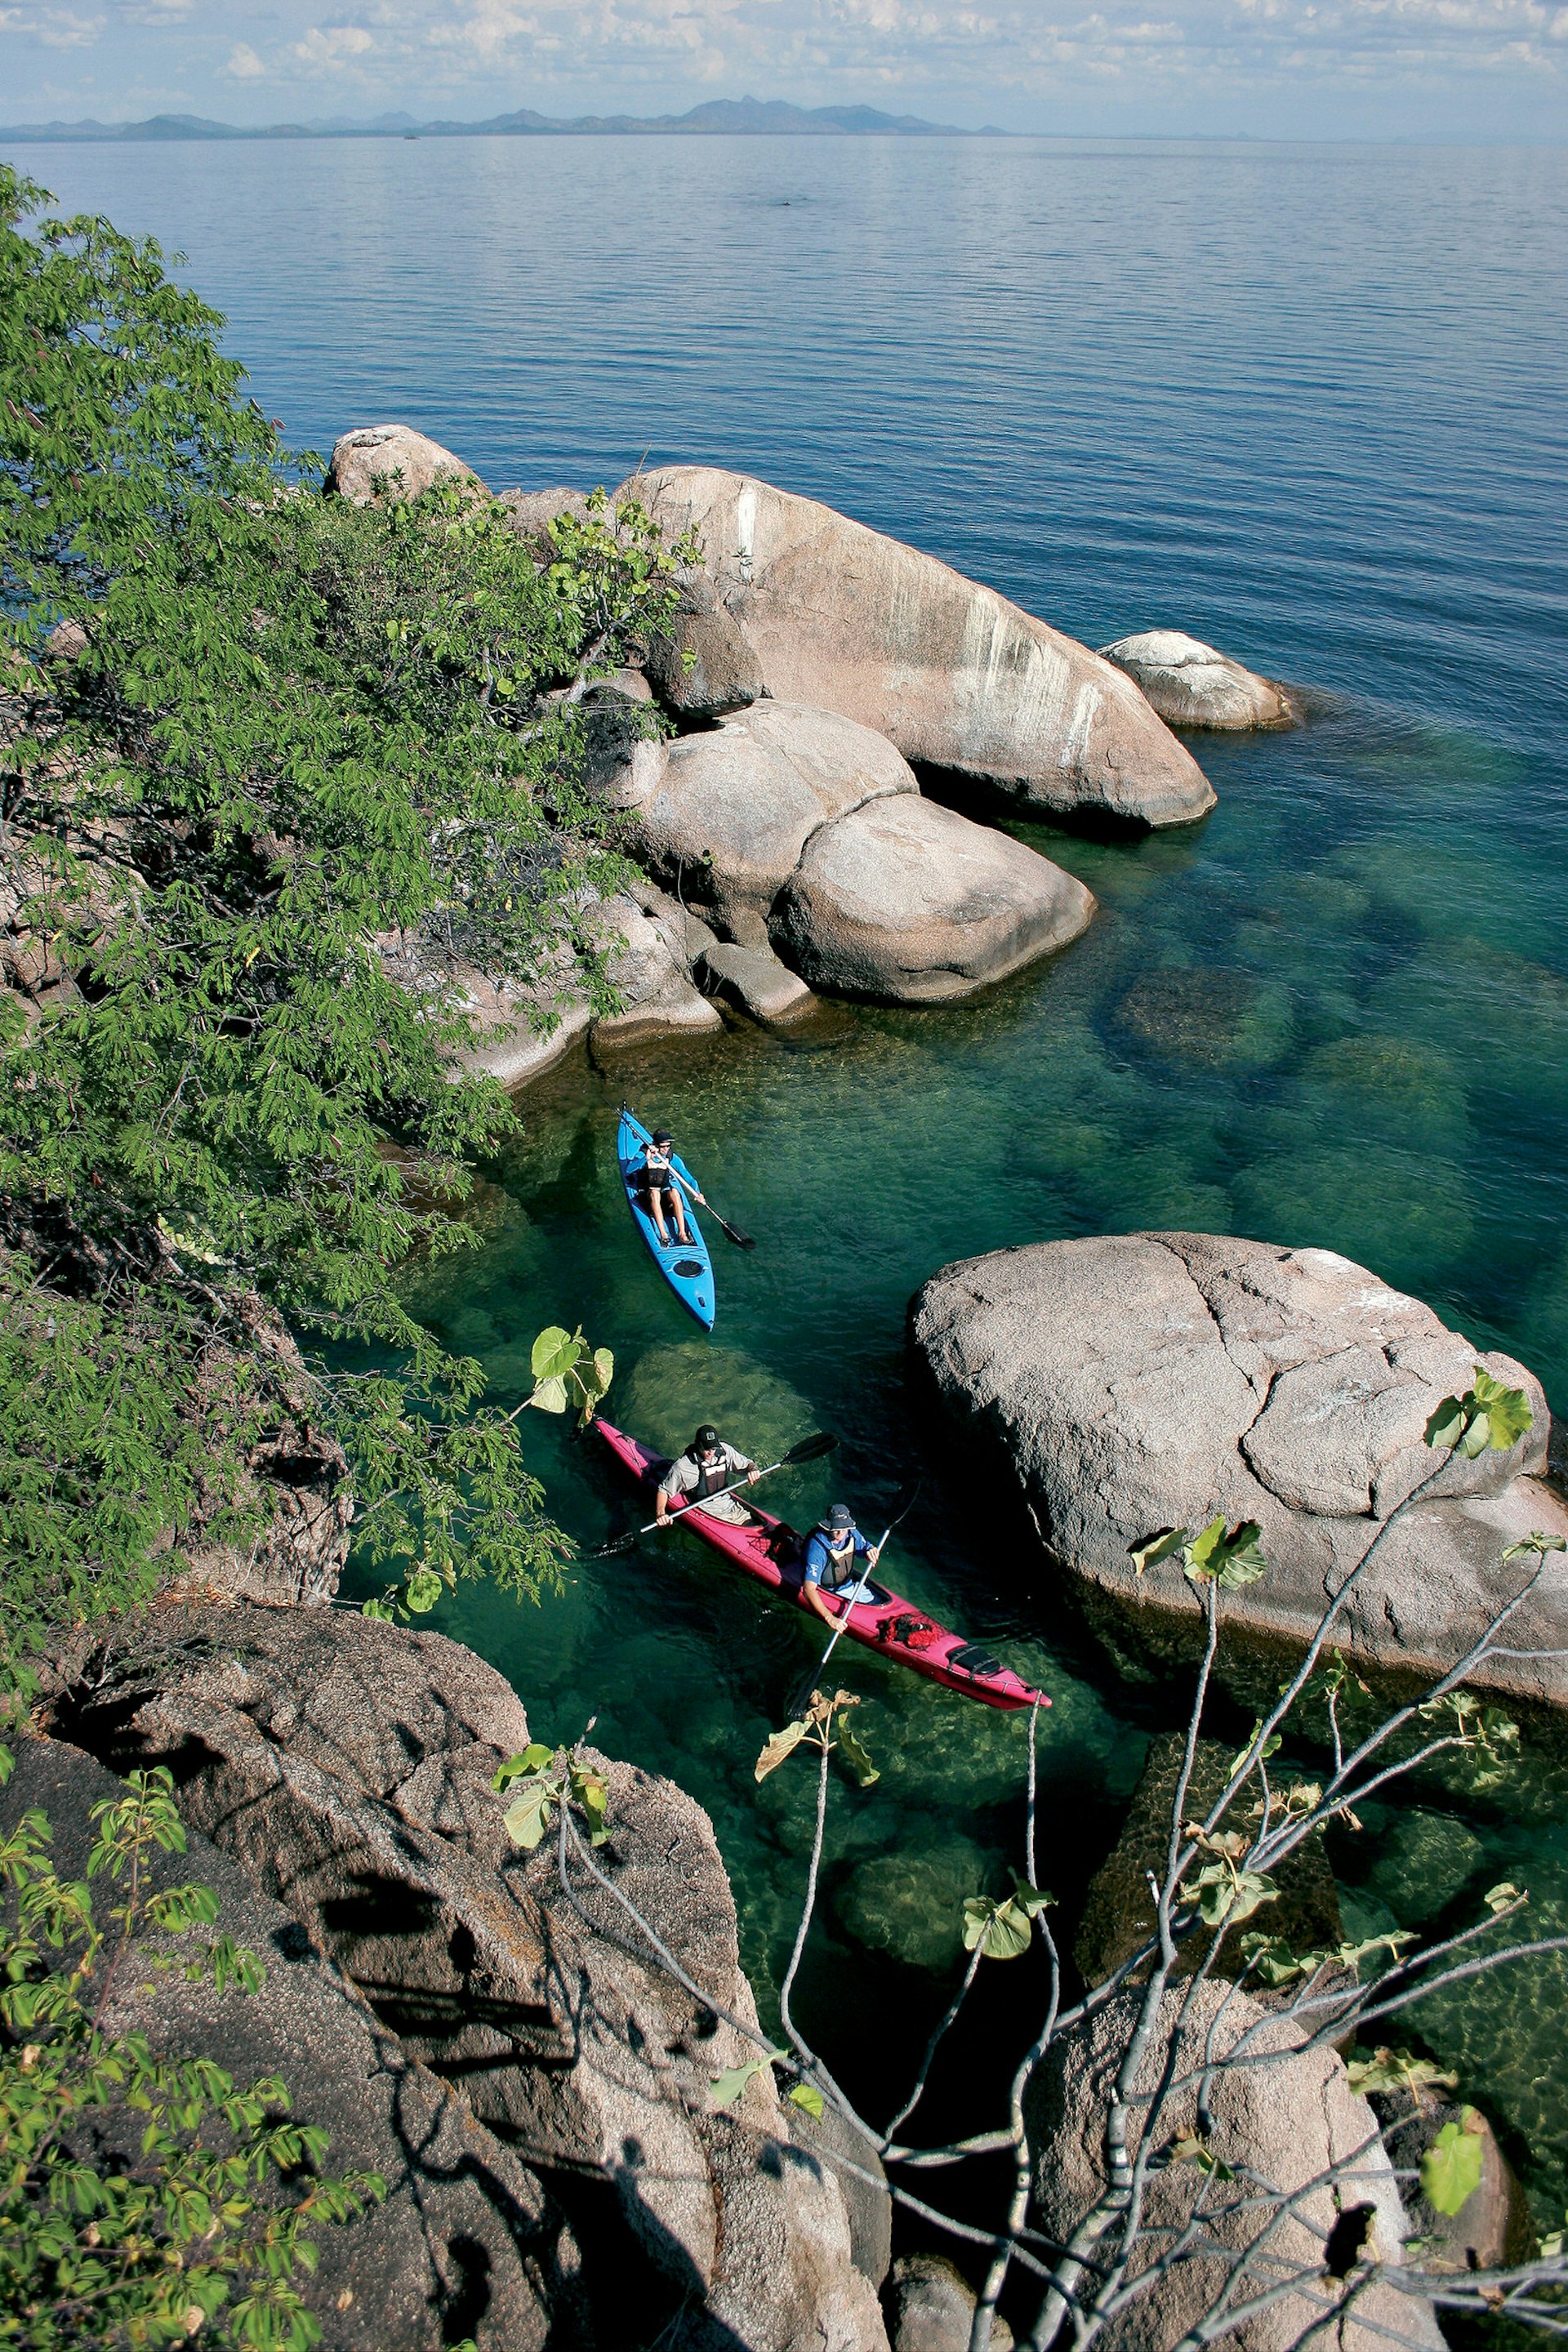 Great lakes – Kayakers paddle in Lake Malawi, Malawi